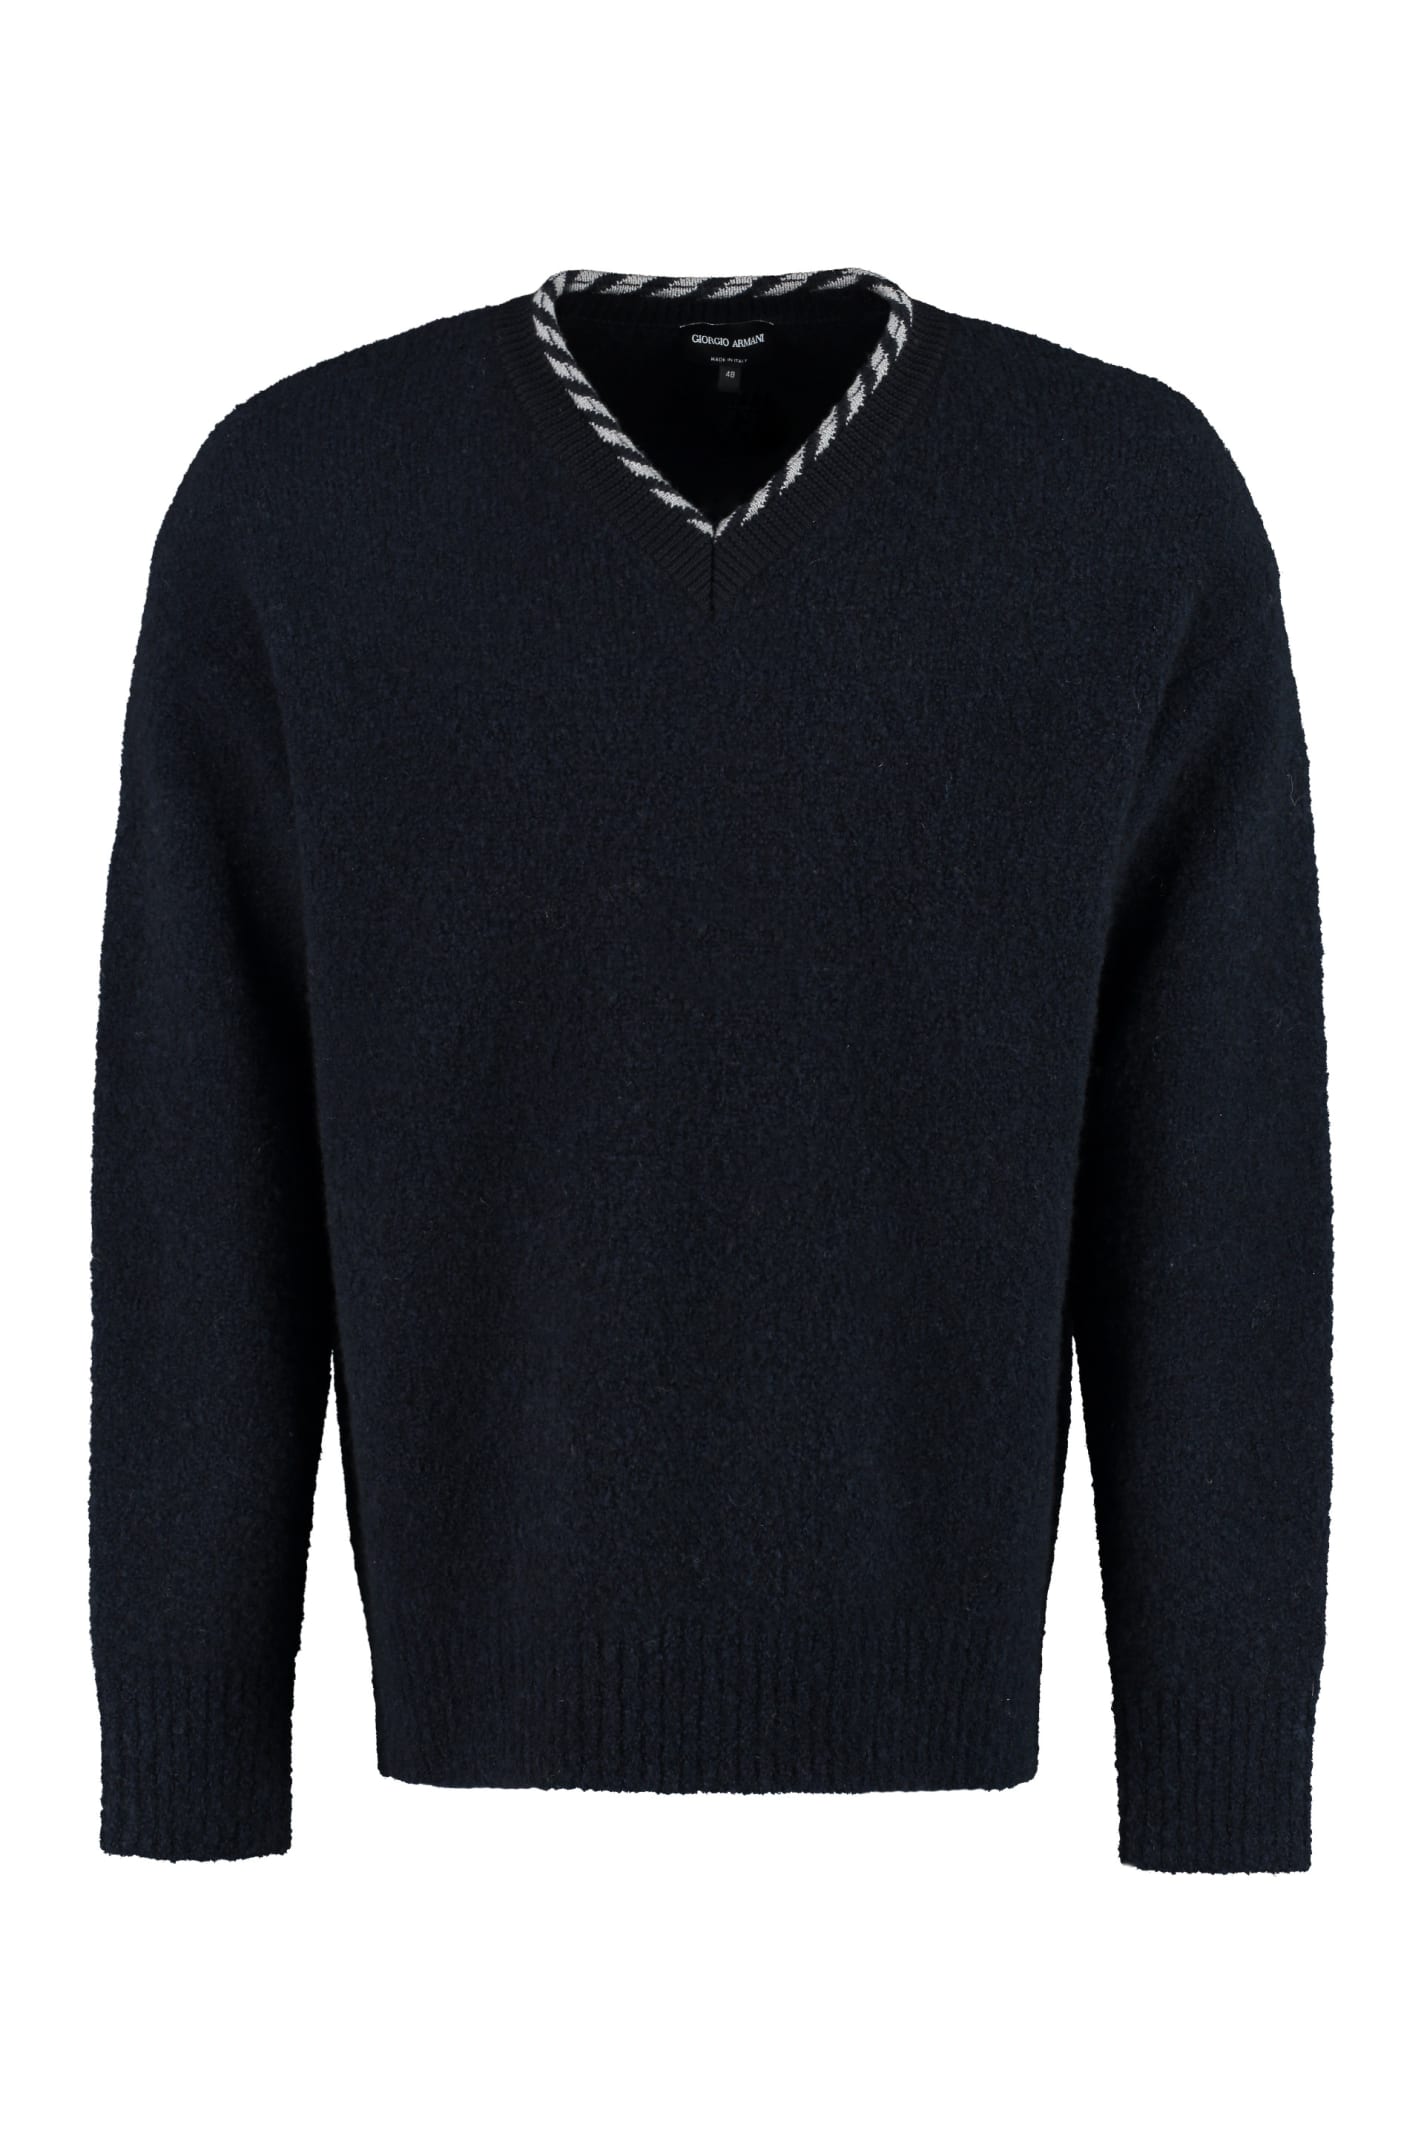 Giorgio Armani Wool Blend Sweater